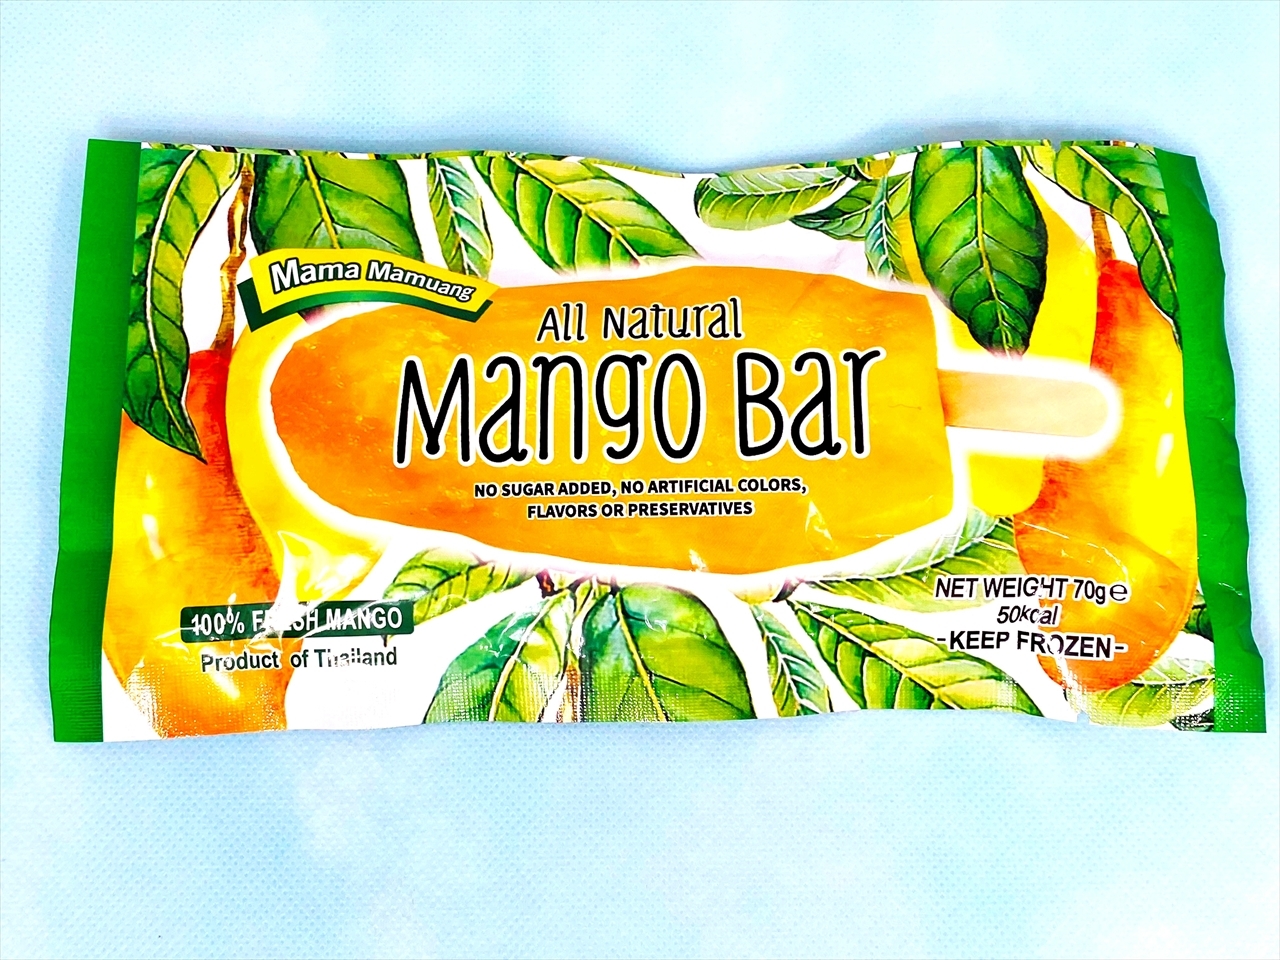 All Natural Mango Bar